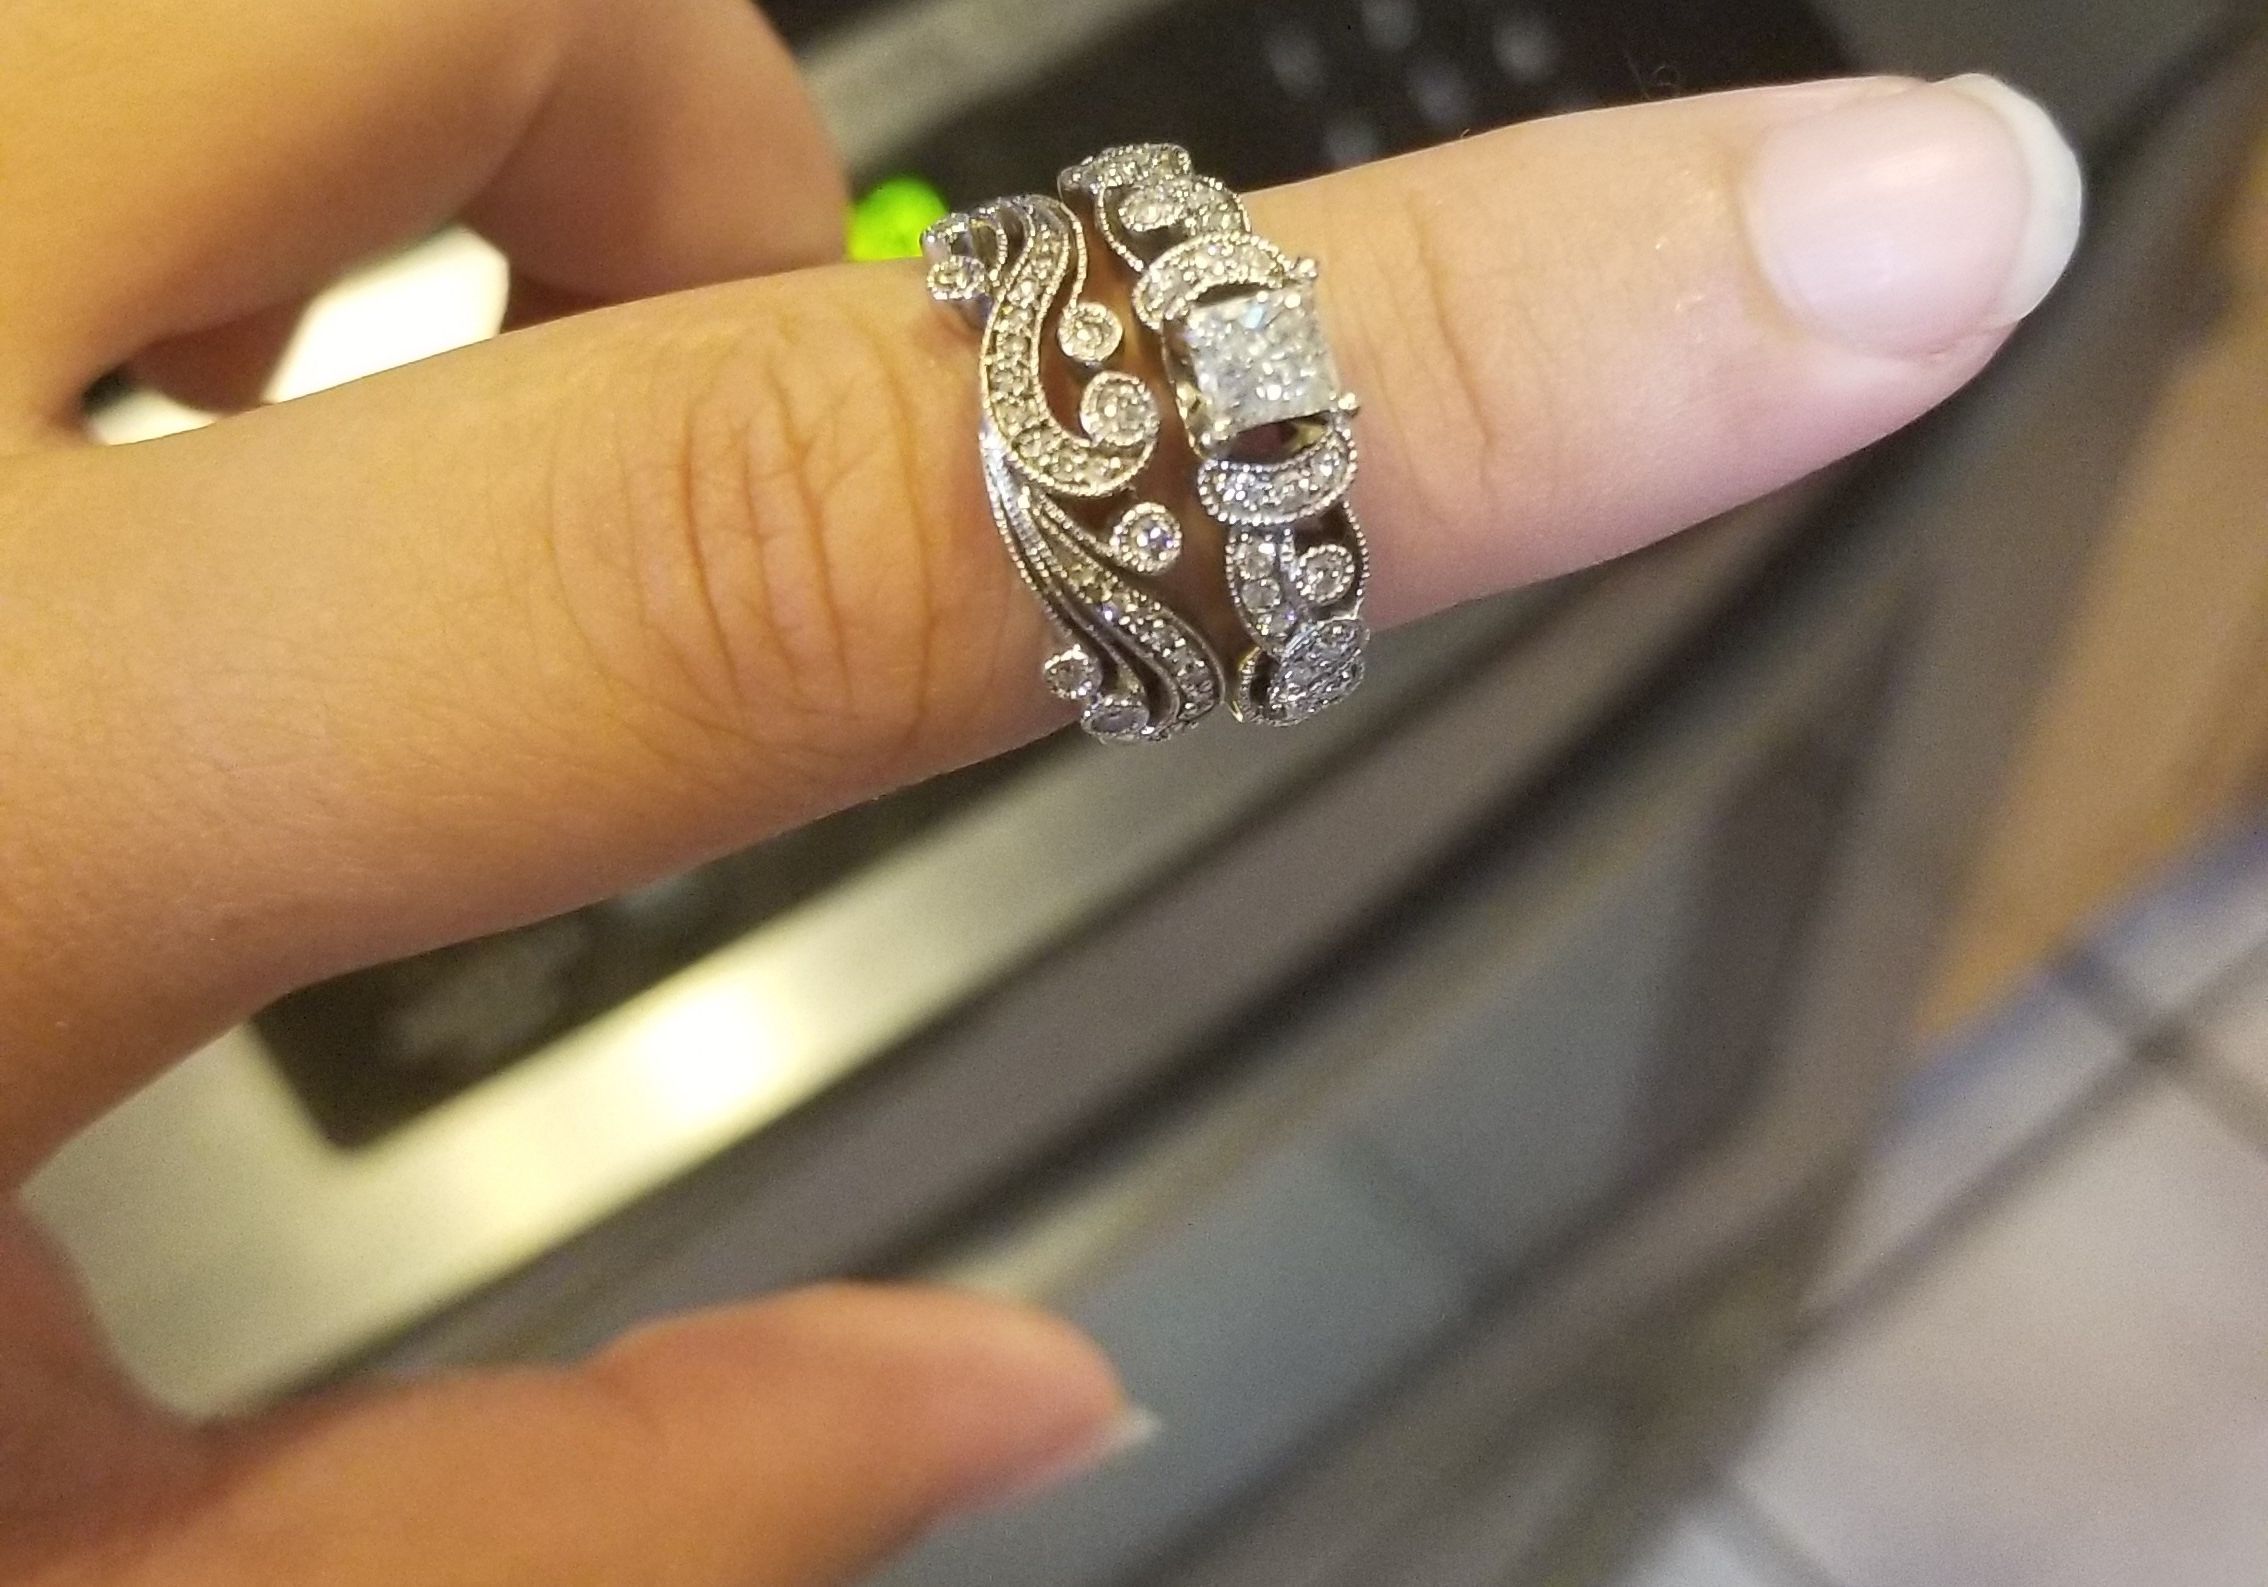 Diamond engagement/wedding ring set size 7 1/2